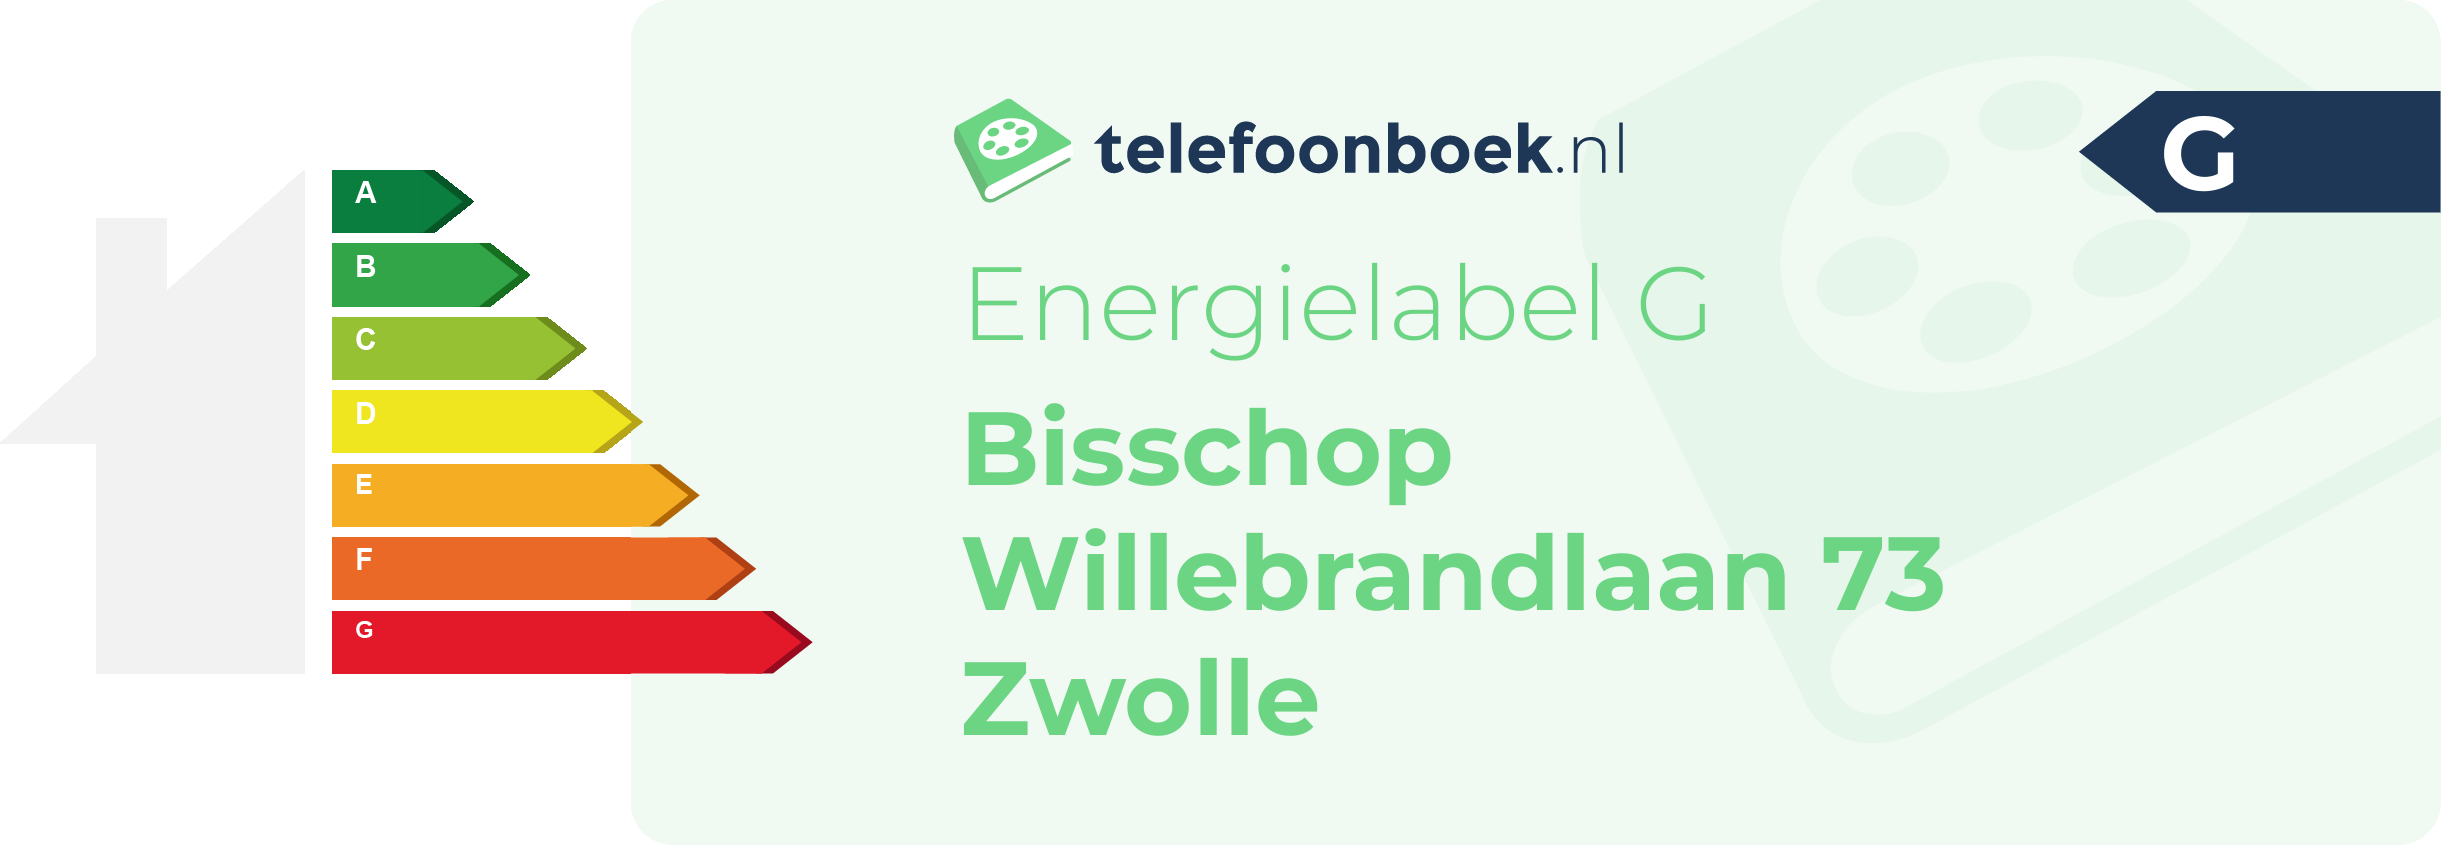 Energielabel Bisschop Willebrandlaan 73 Zwolle